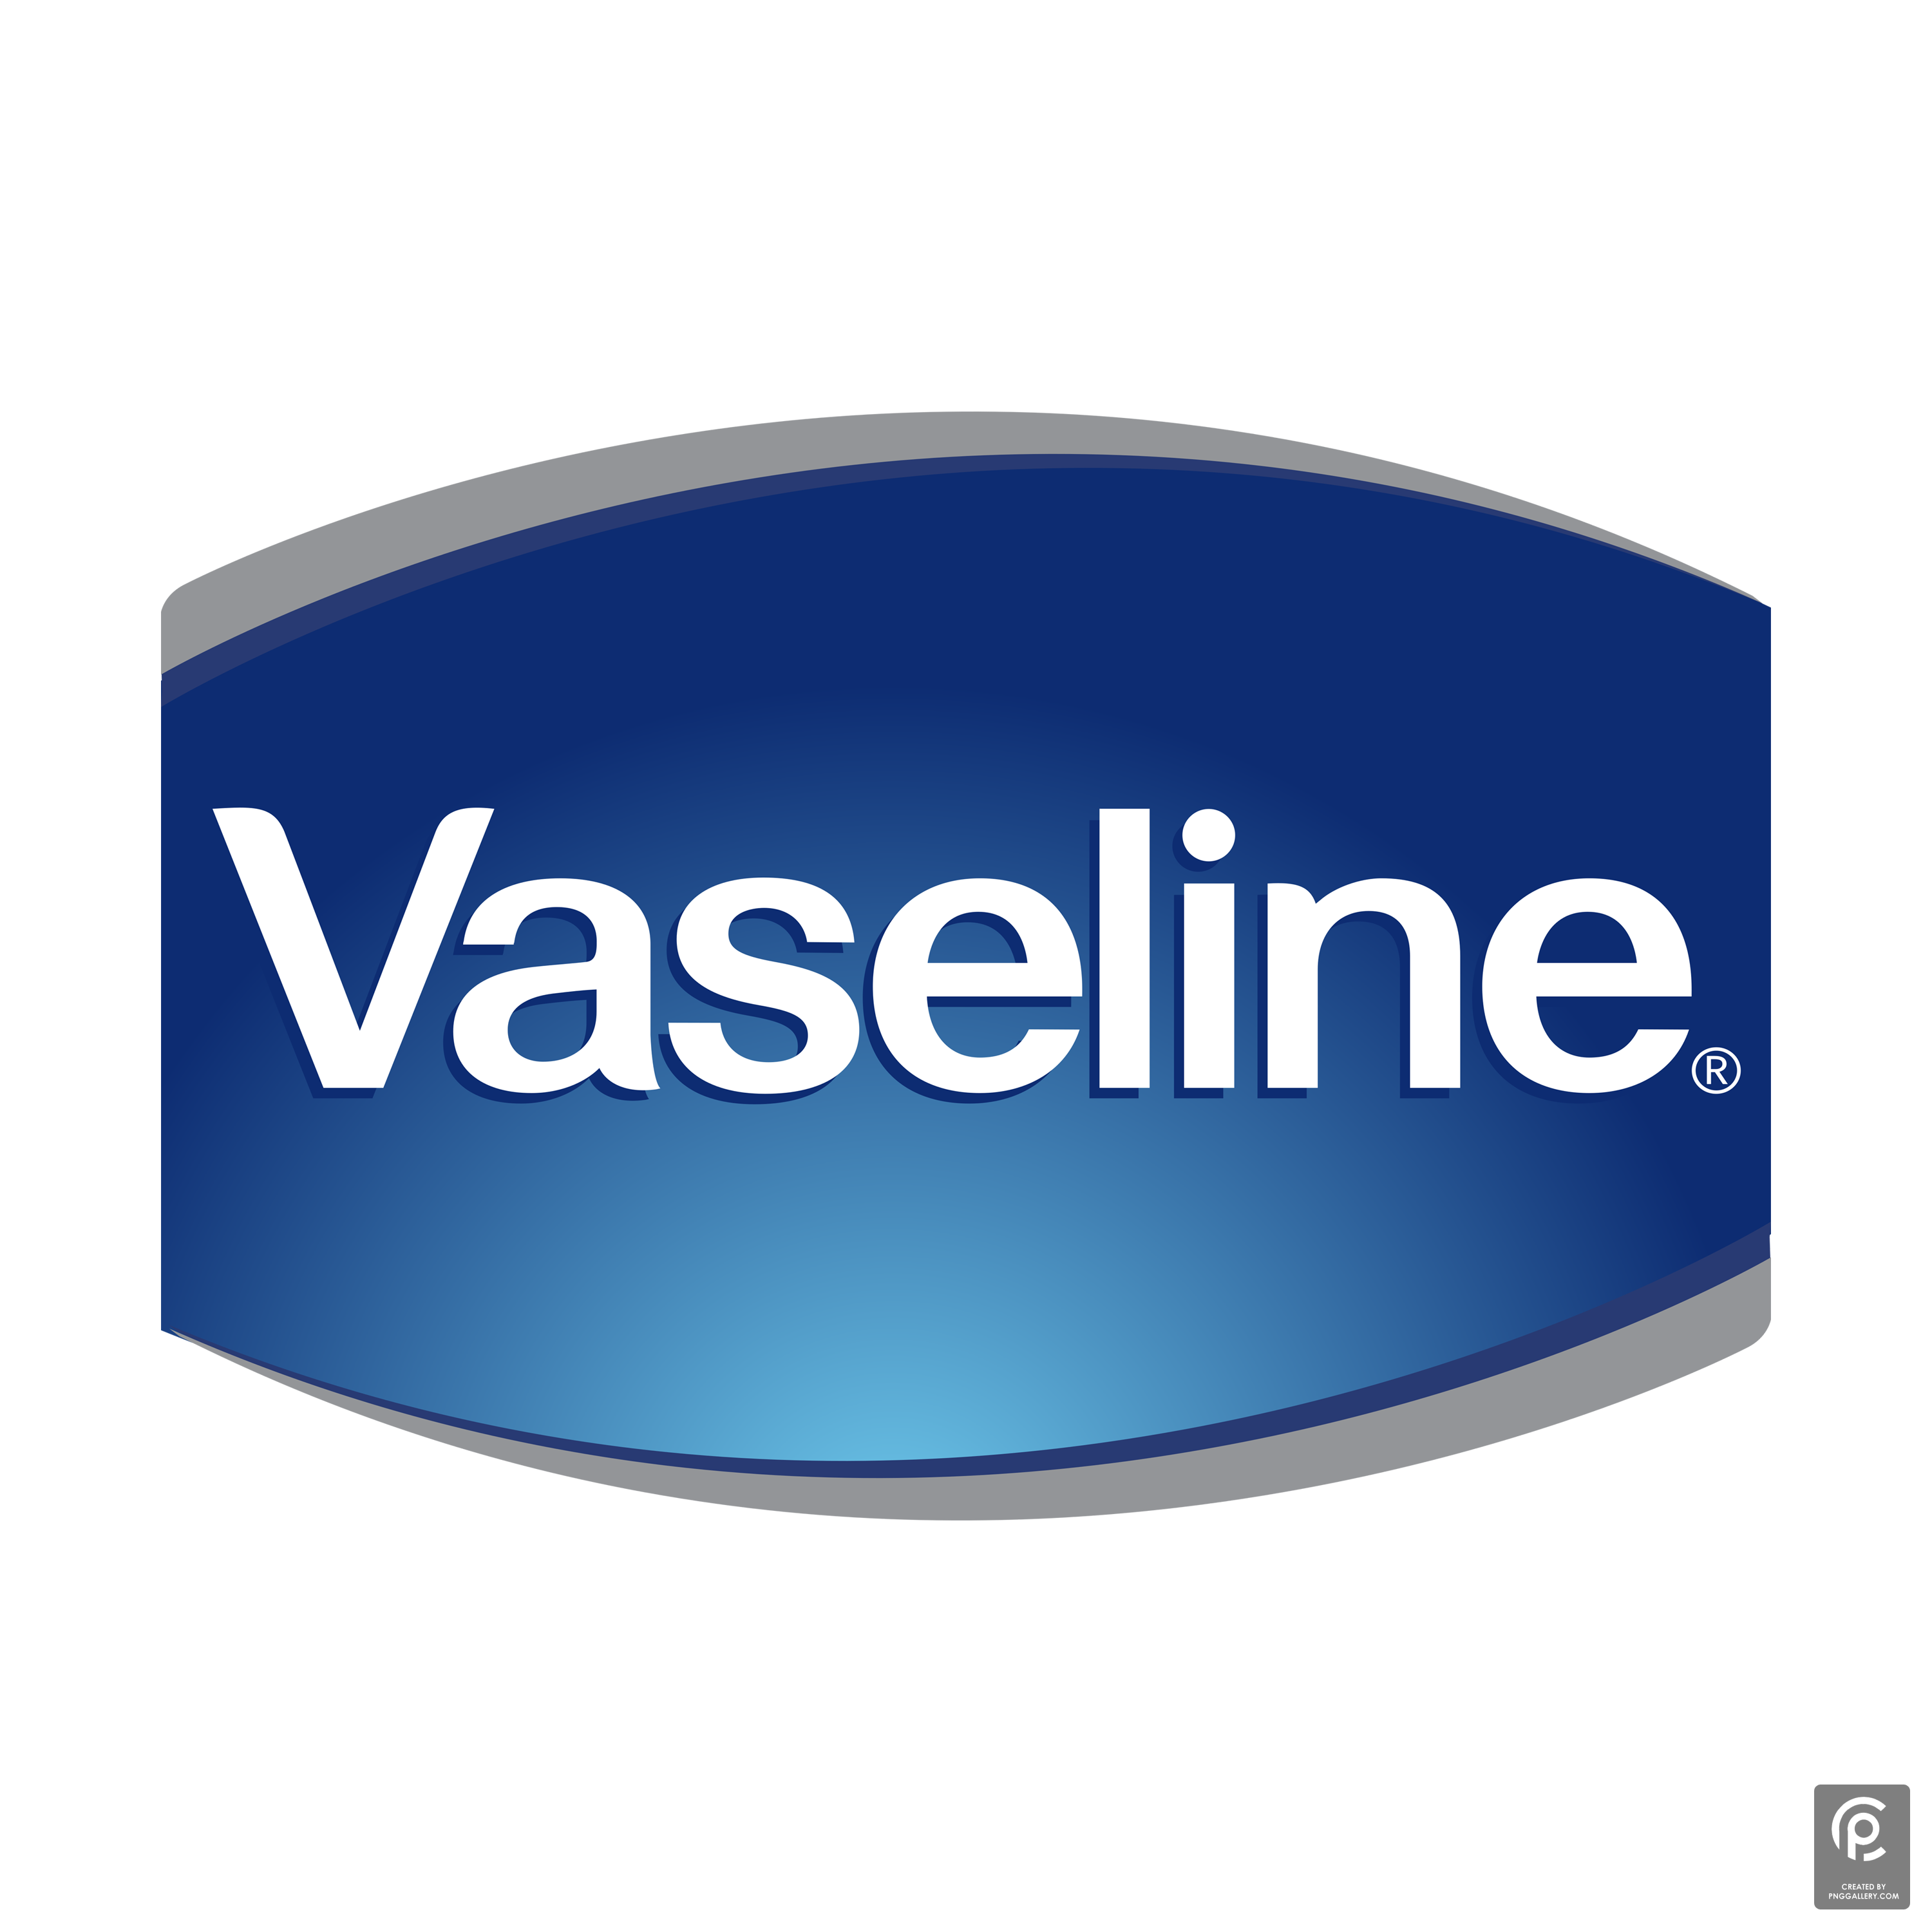 Vaseline Logo Transparent Gallery